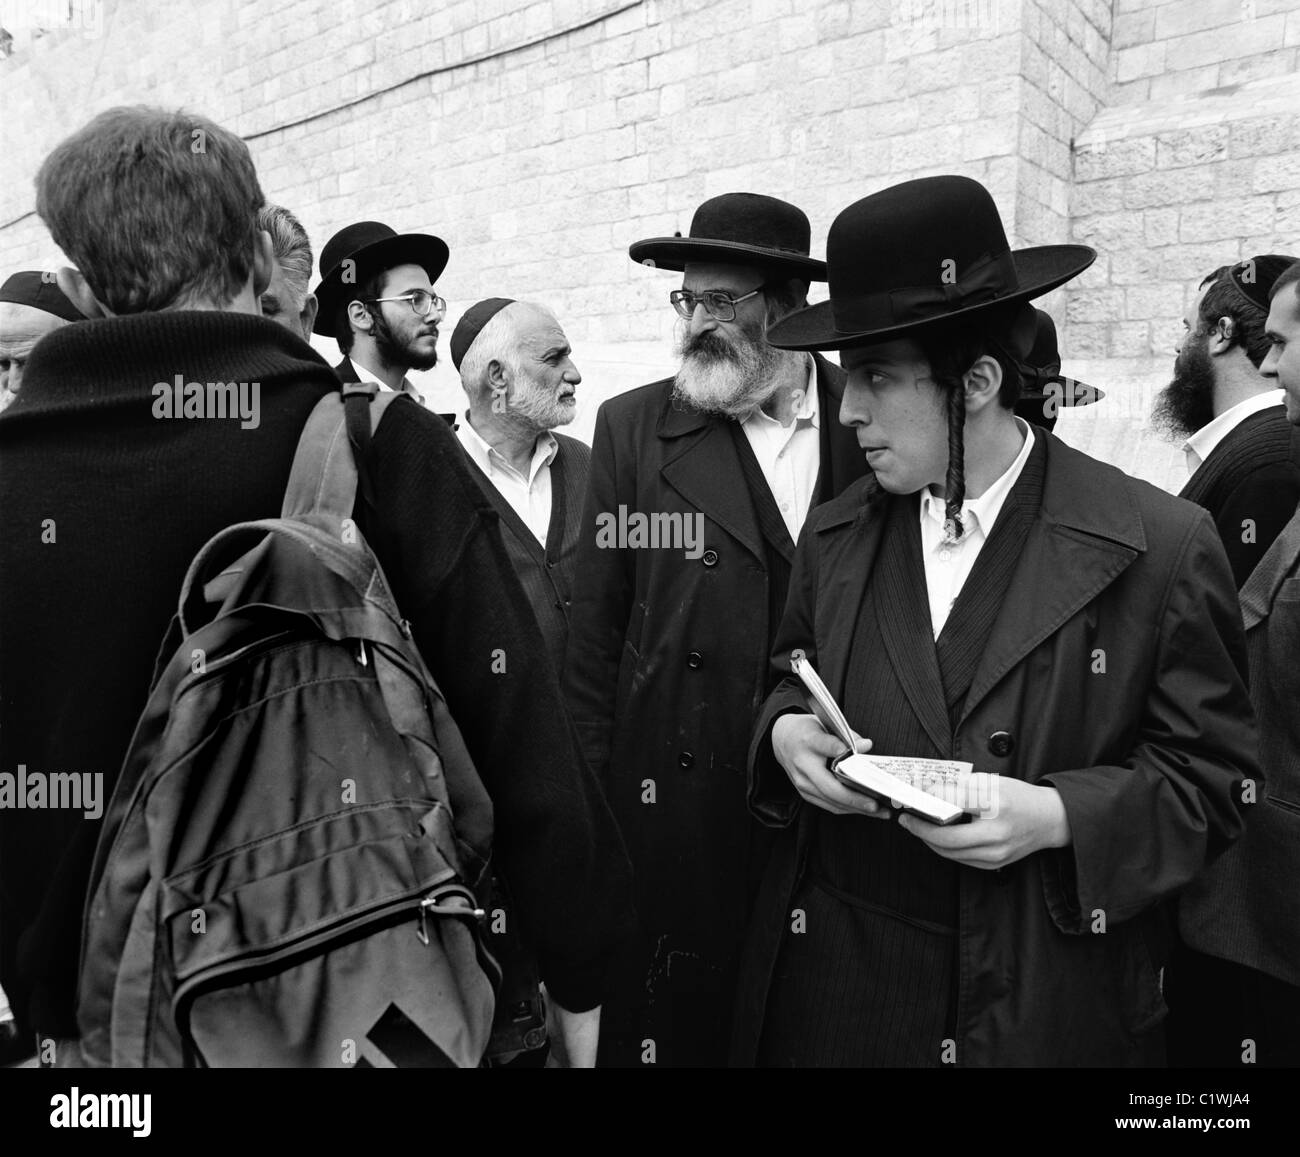 Ebrea ortodossa uomini vicino al Muro Occidentale, la Città Vecchia di Gerusalemme, Israele Foto Stock